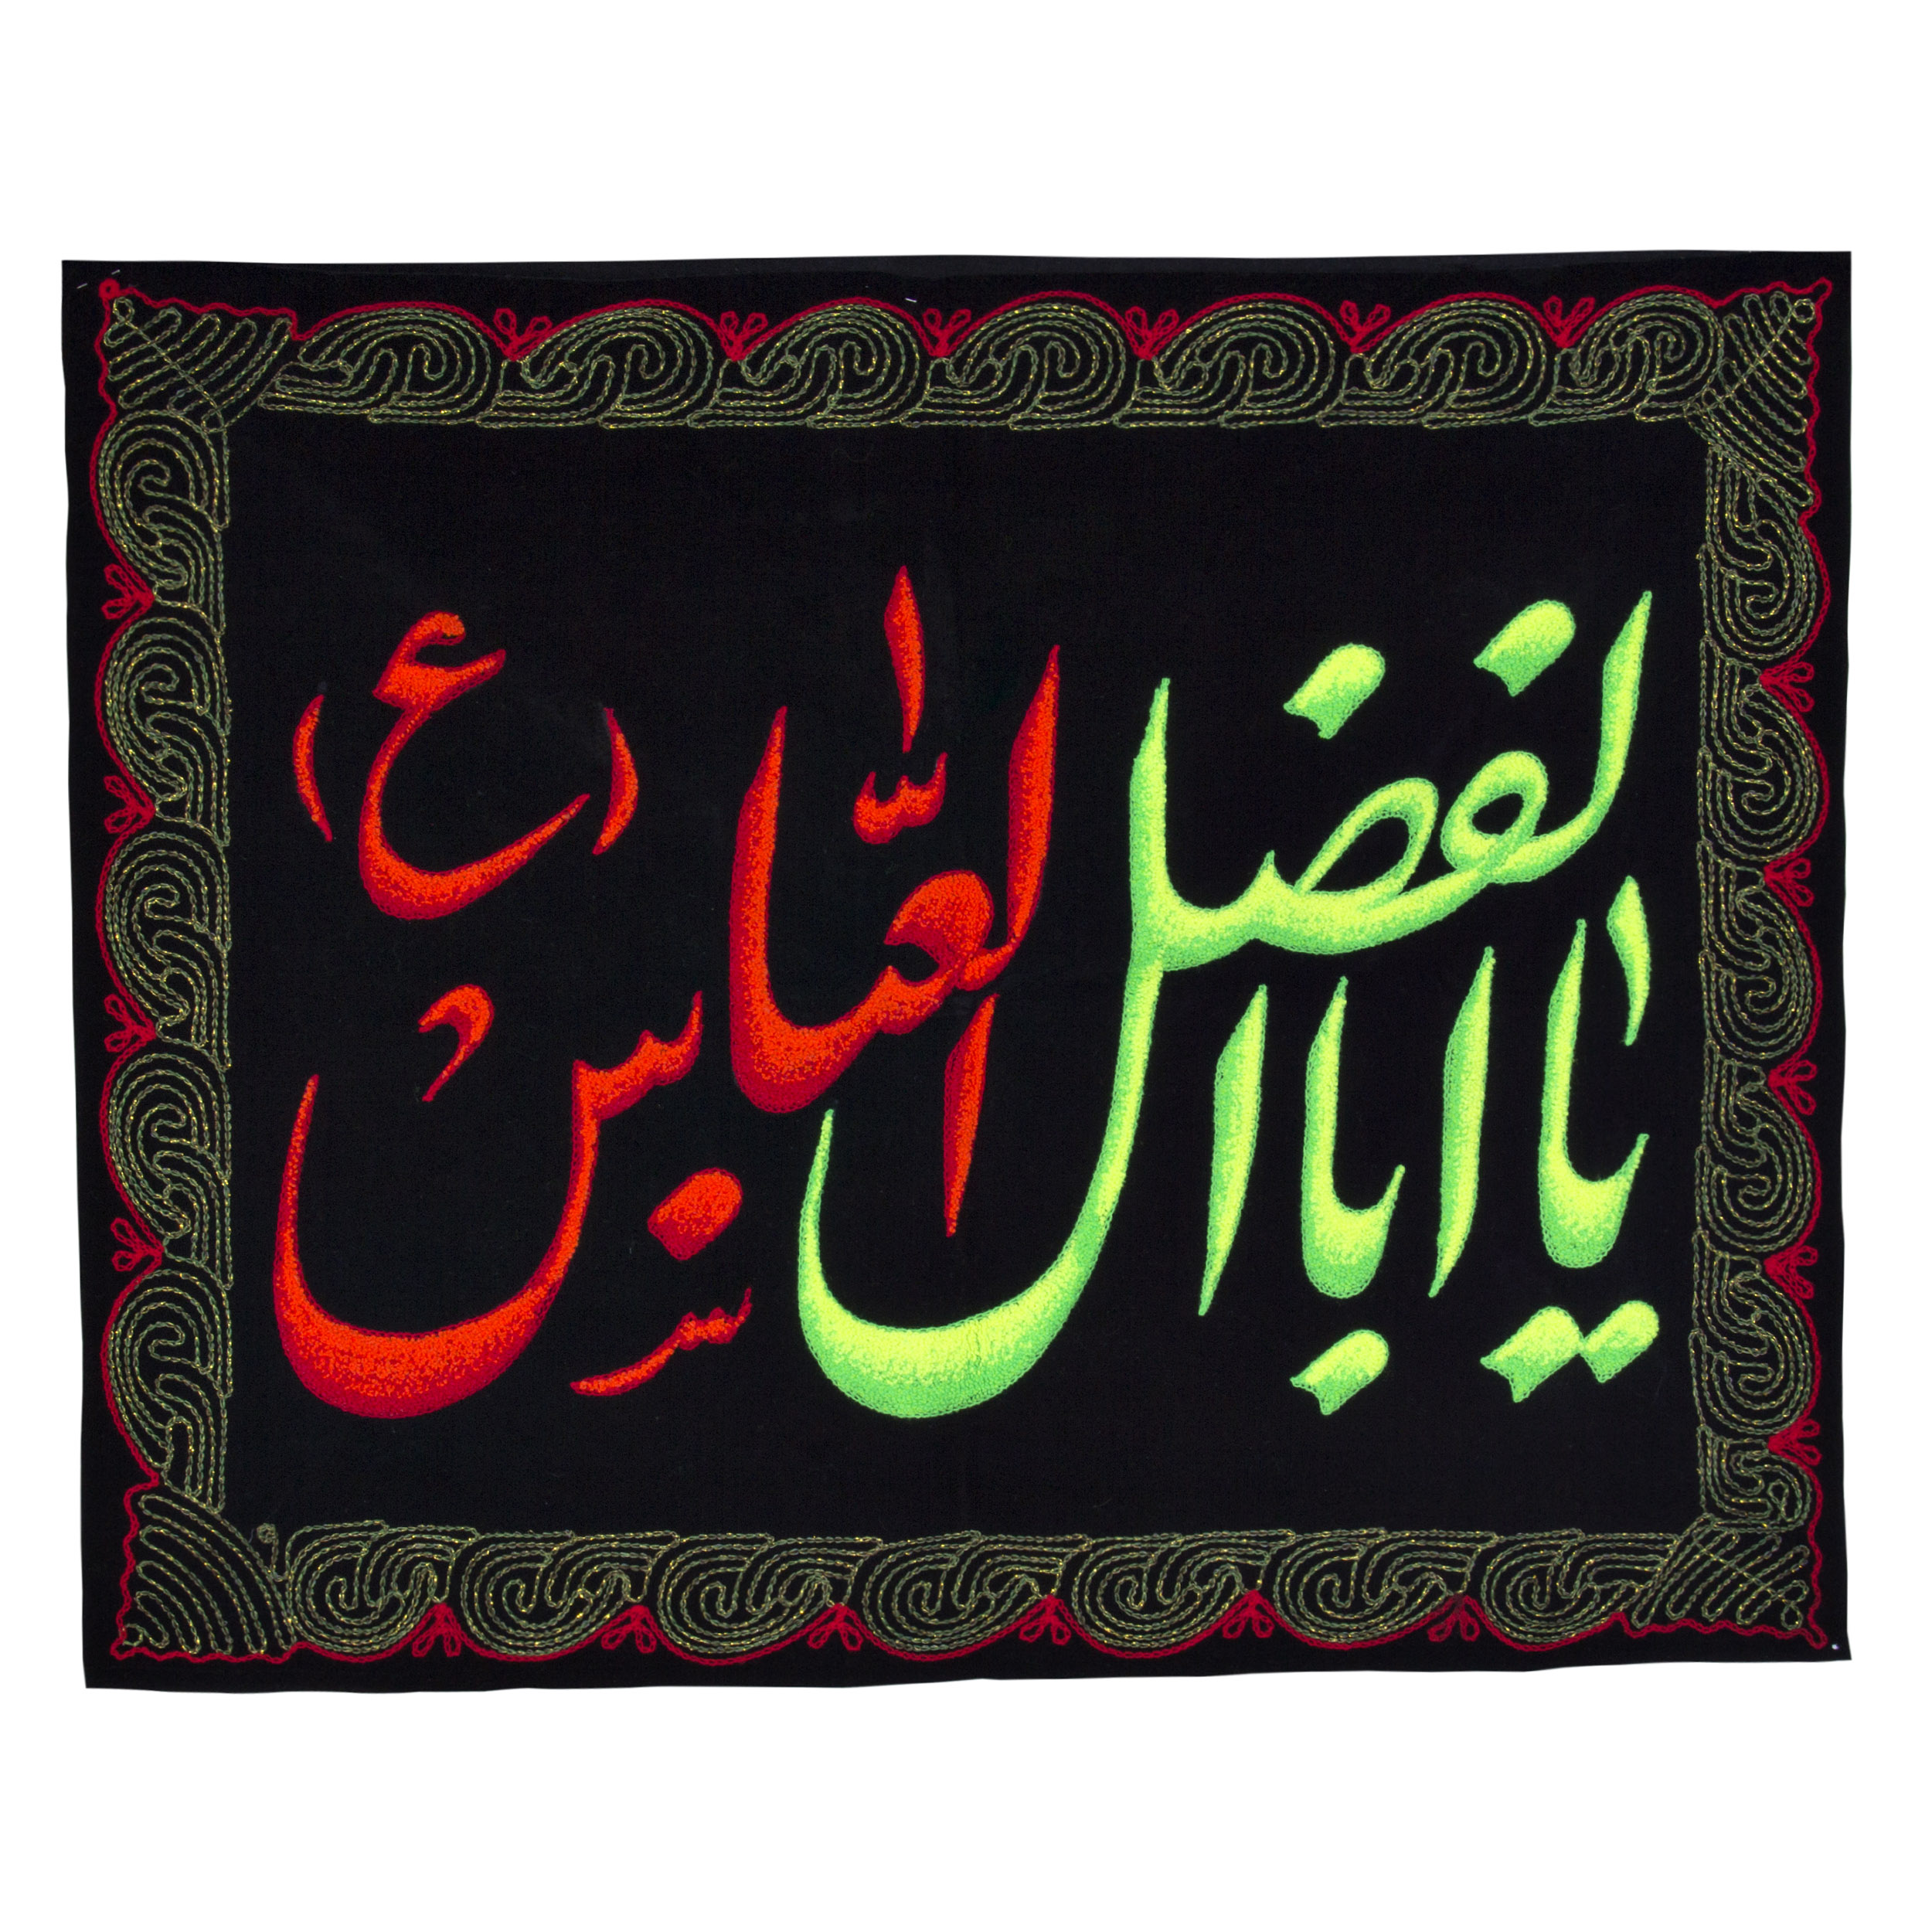 پرچم بازرگانی میلادی  مدل مذهبی یااباالفضل العباس کد PAR-015